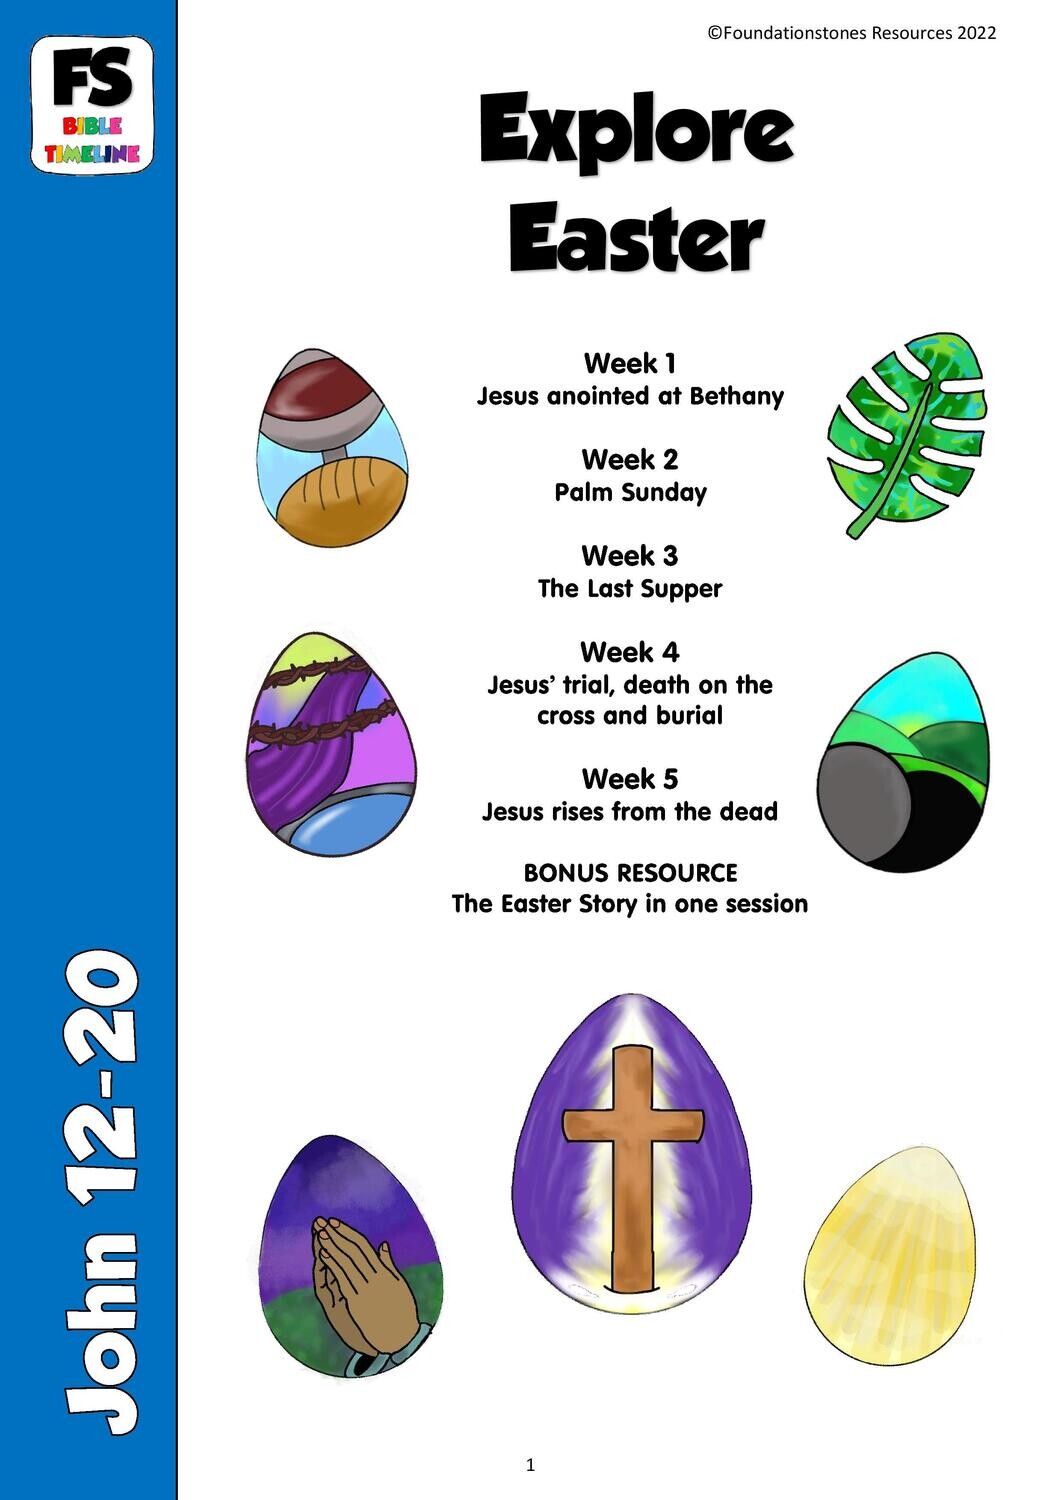 Explore Easter - 5 week series